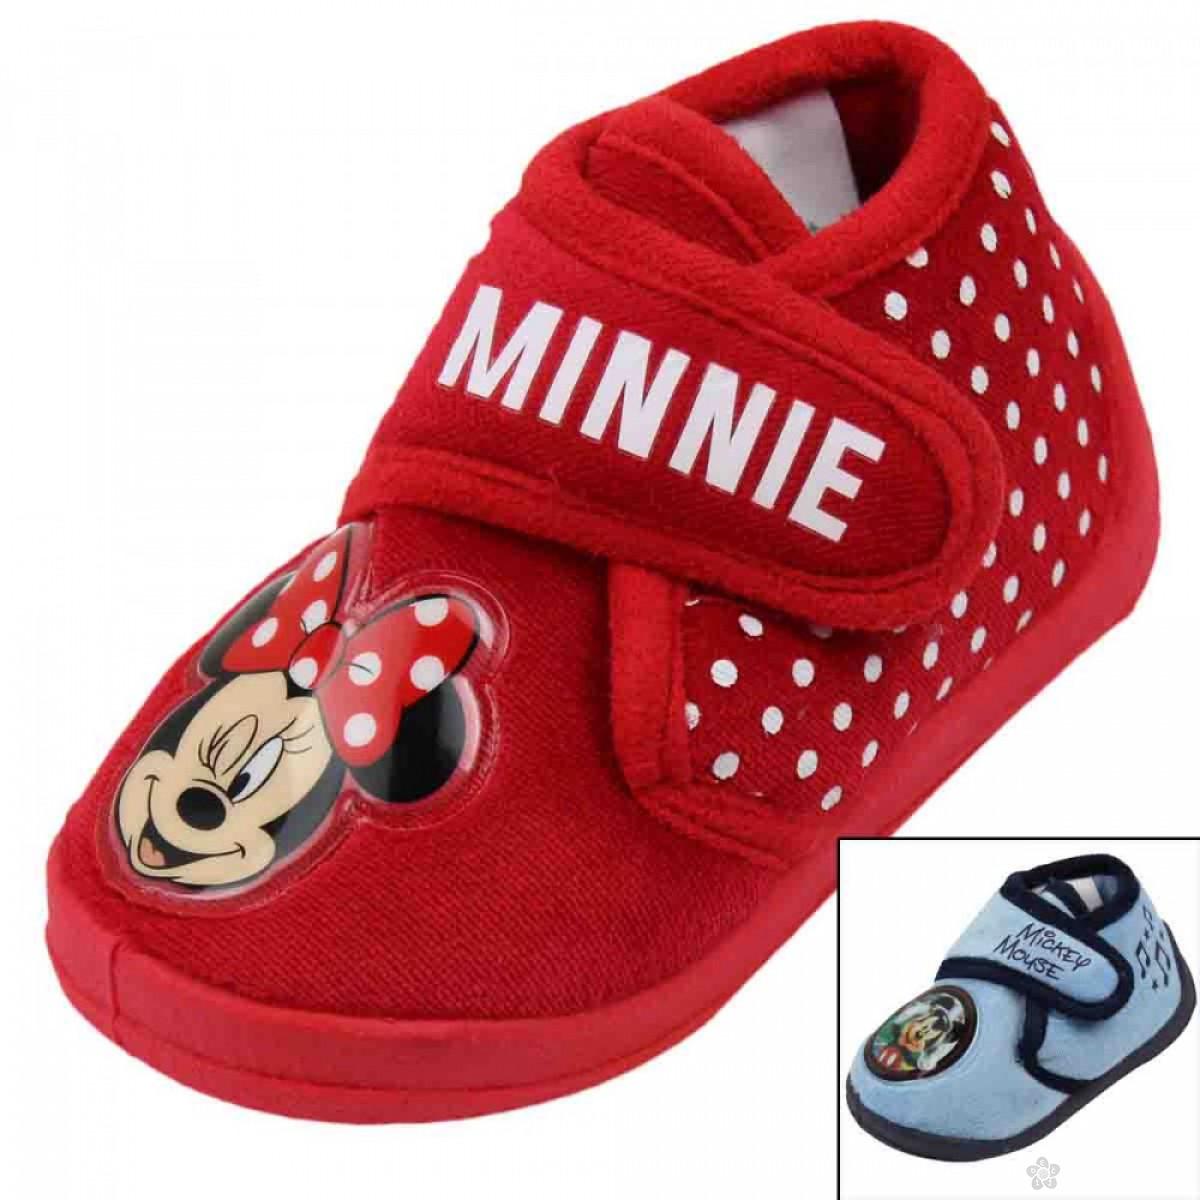 Patofne Minnie & Minnie, D61501 